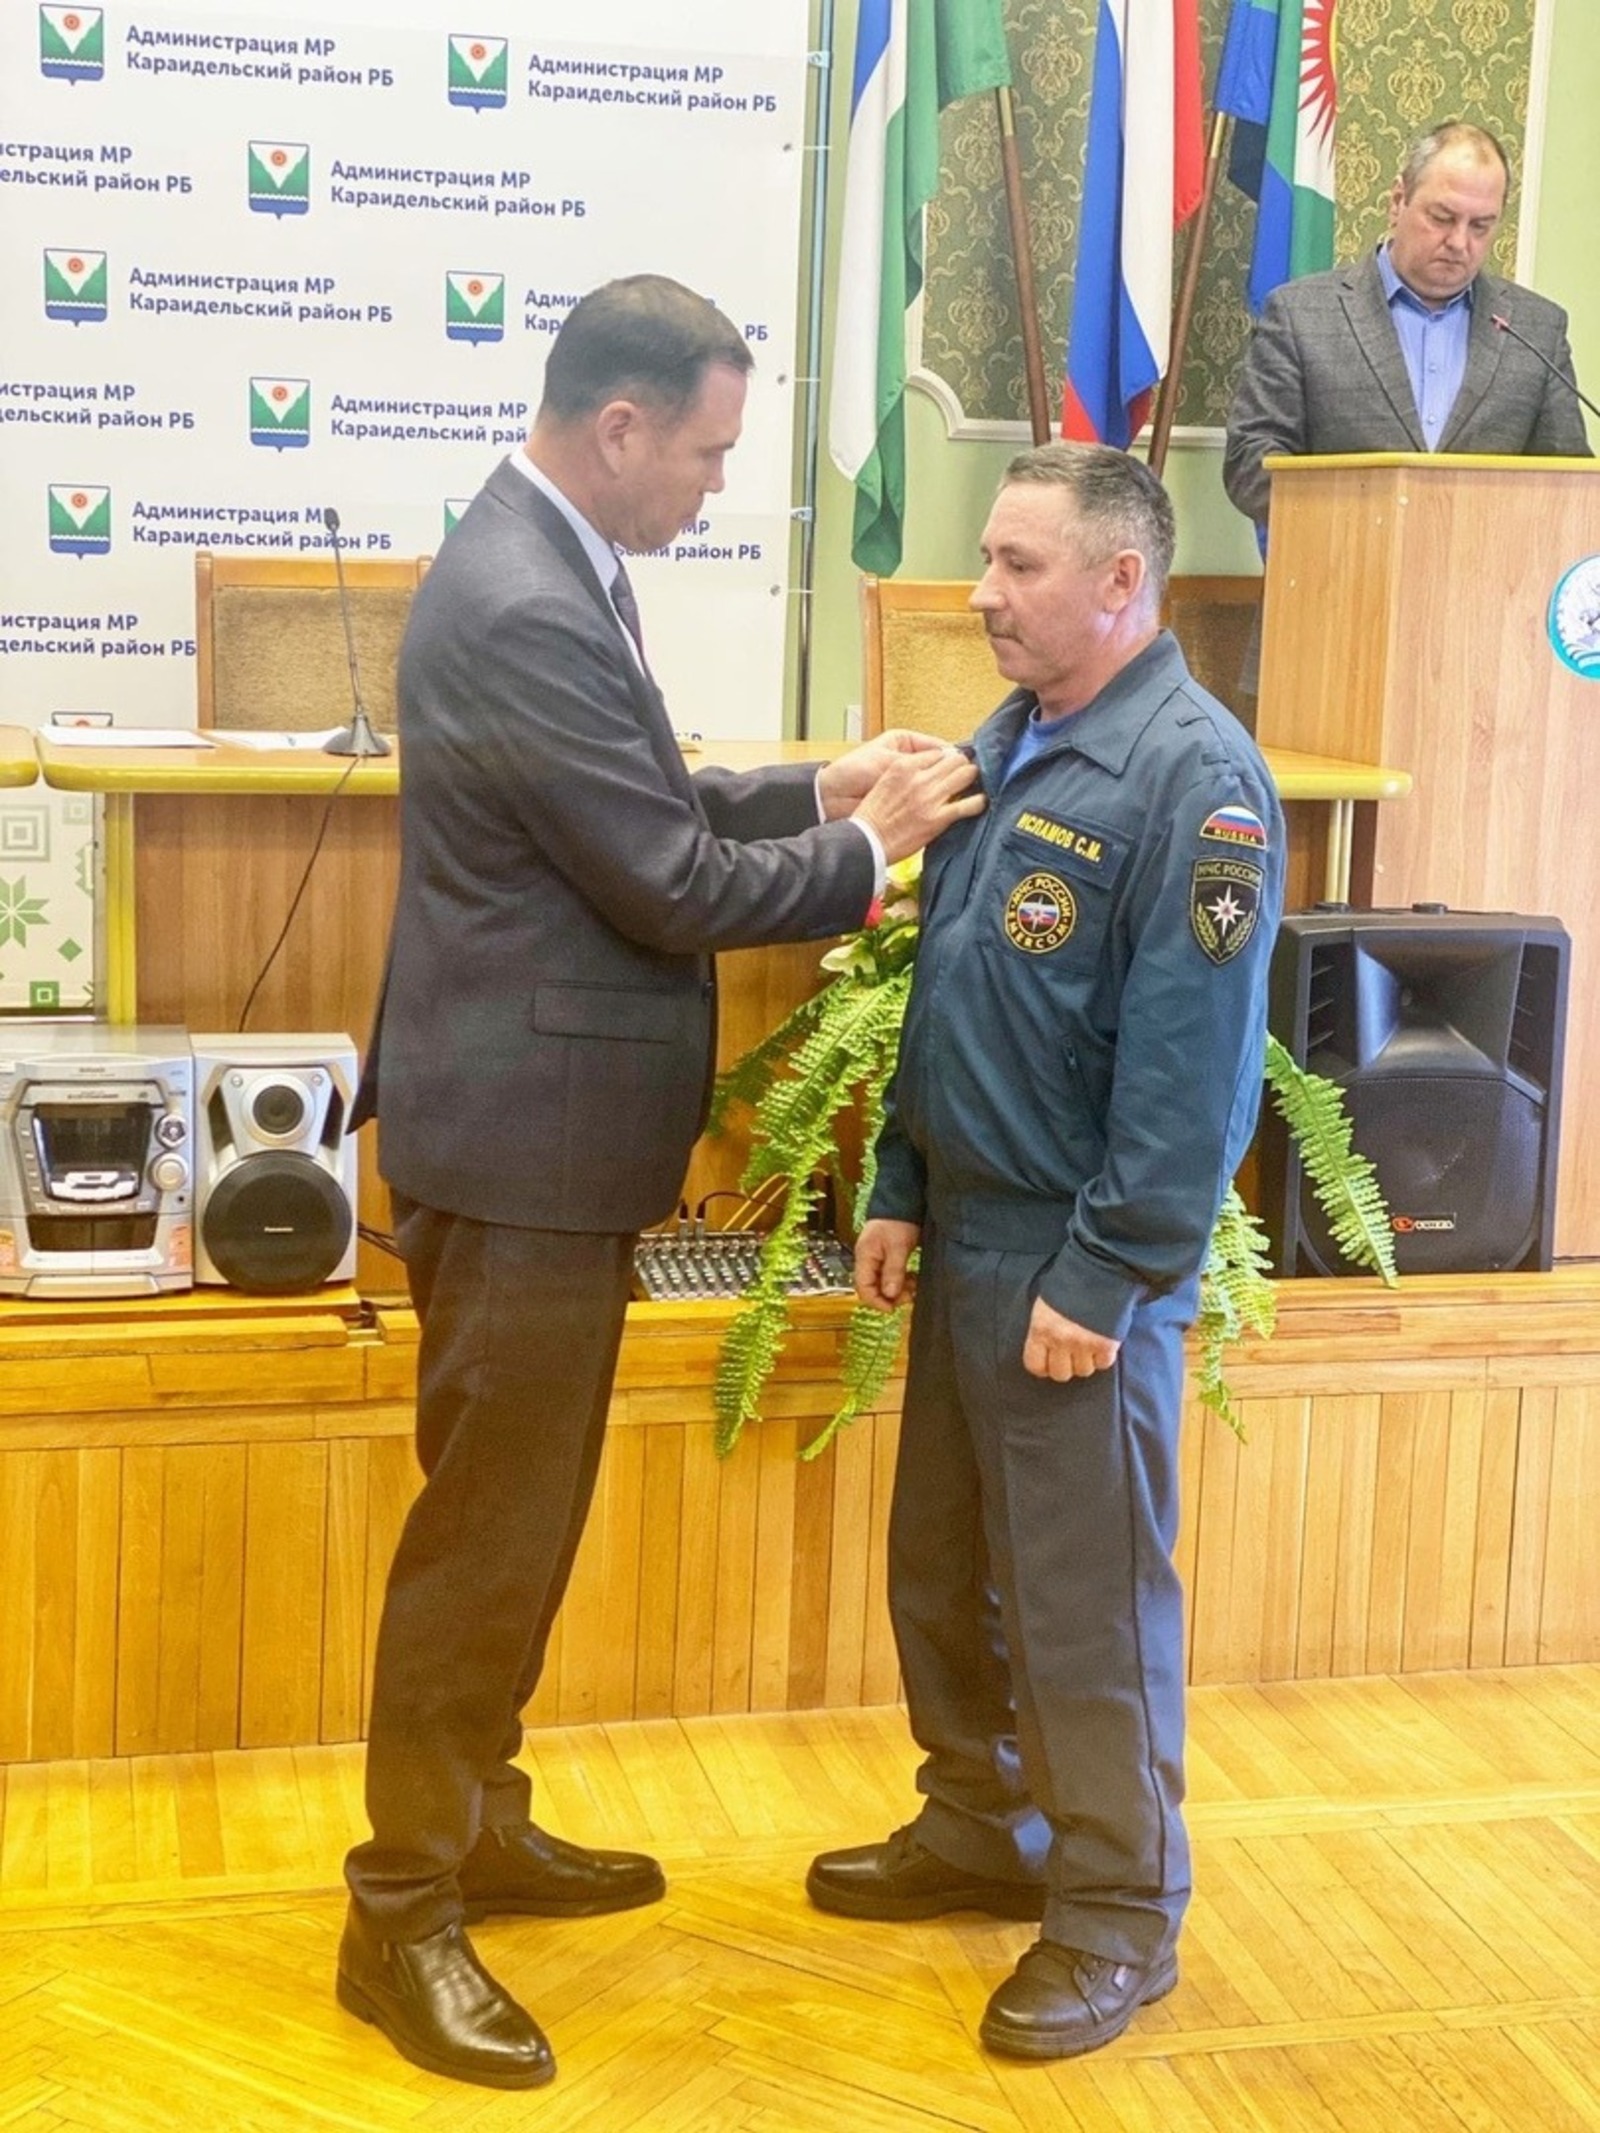 Участник Чеченских конфликтов из Башкирии получил награду спустя 26 лет